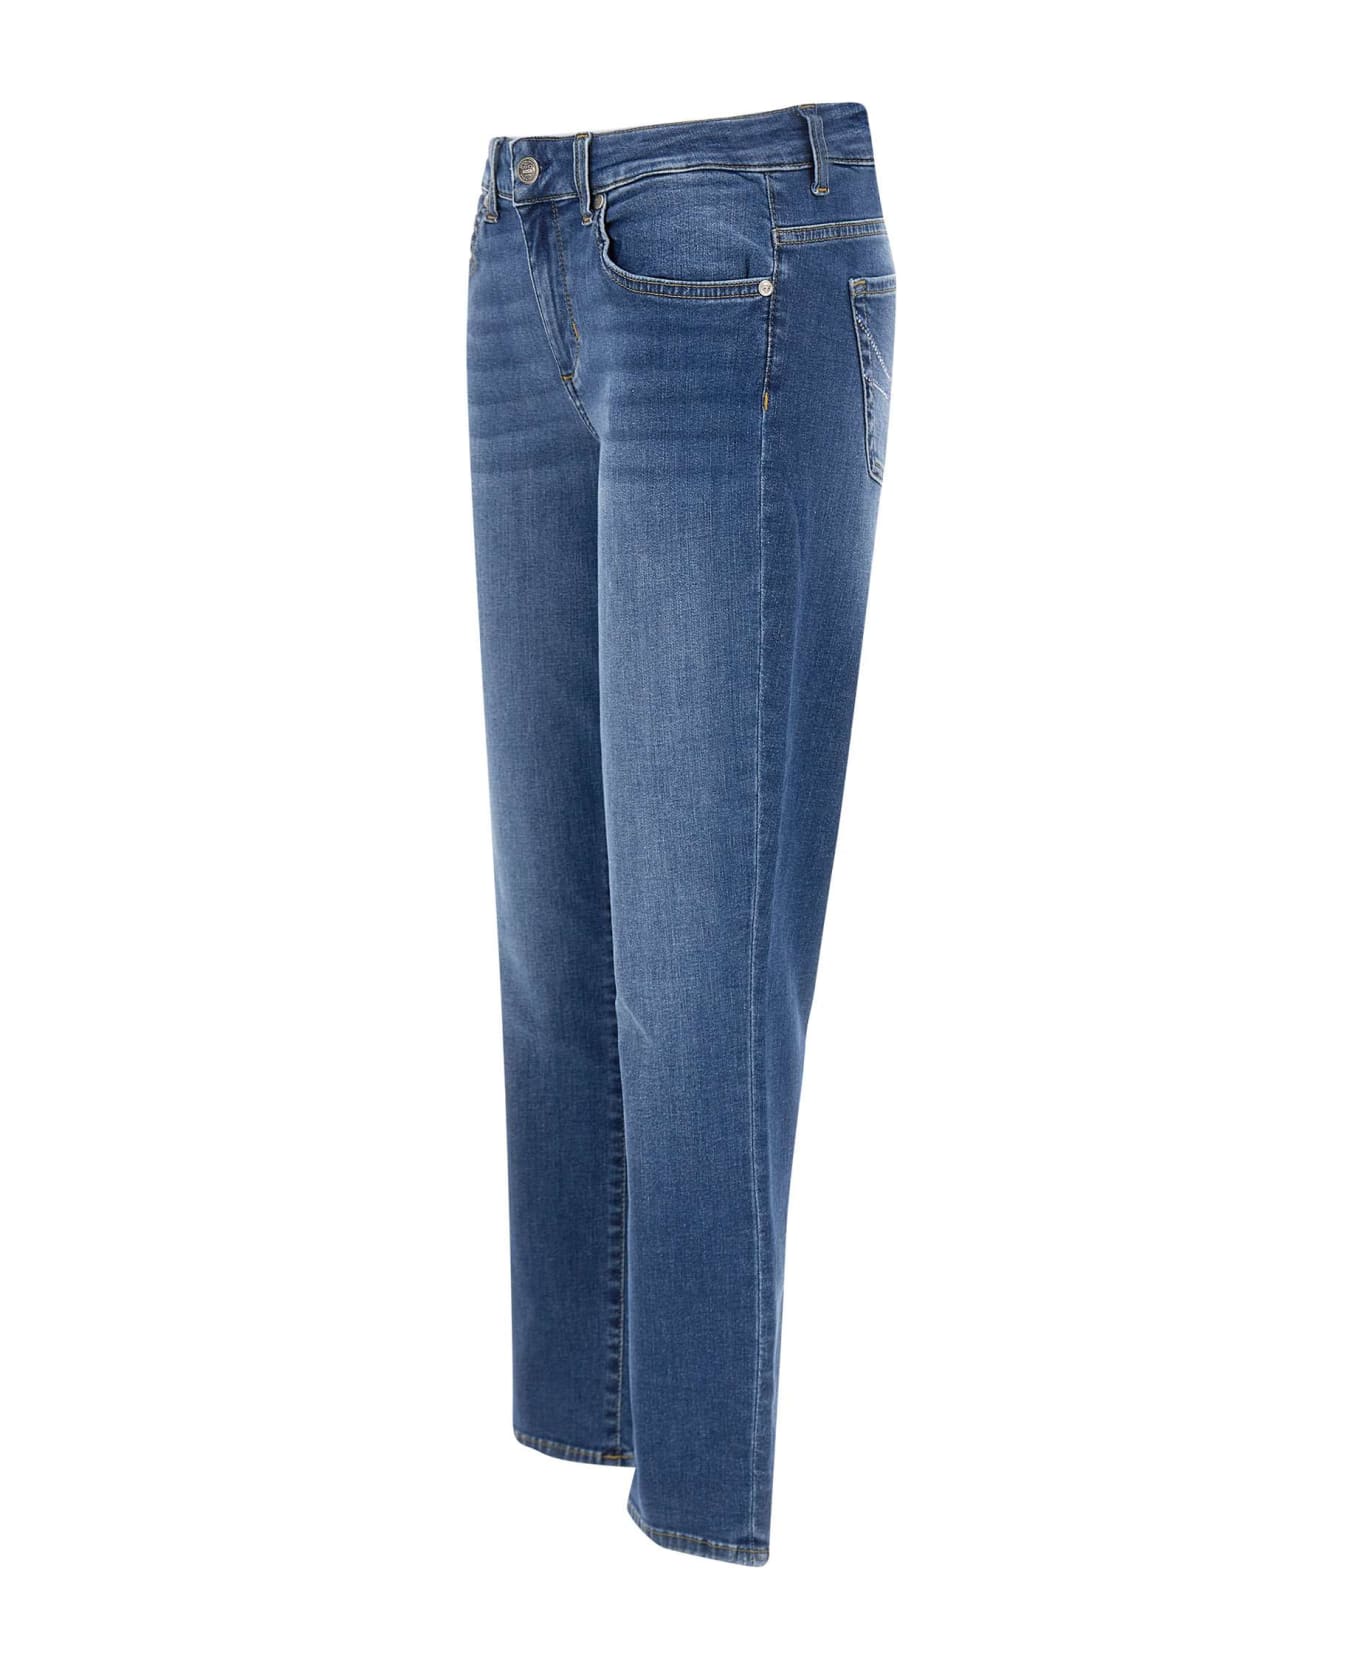 Liu-Jo "monroe" Cotton Jeans - BLUE